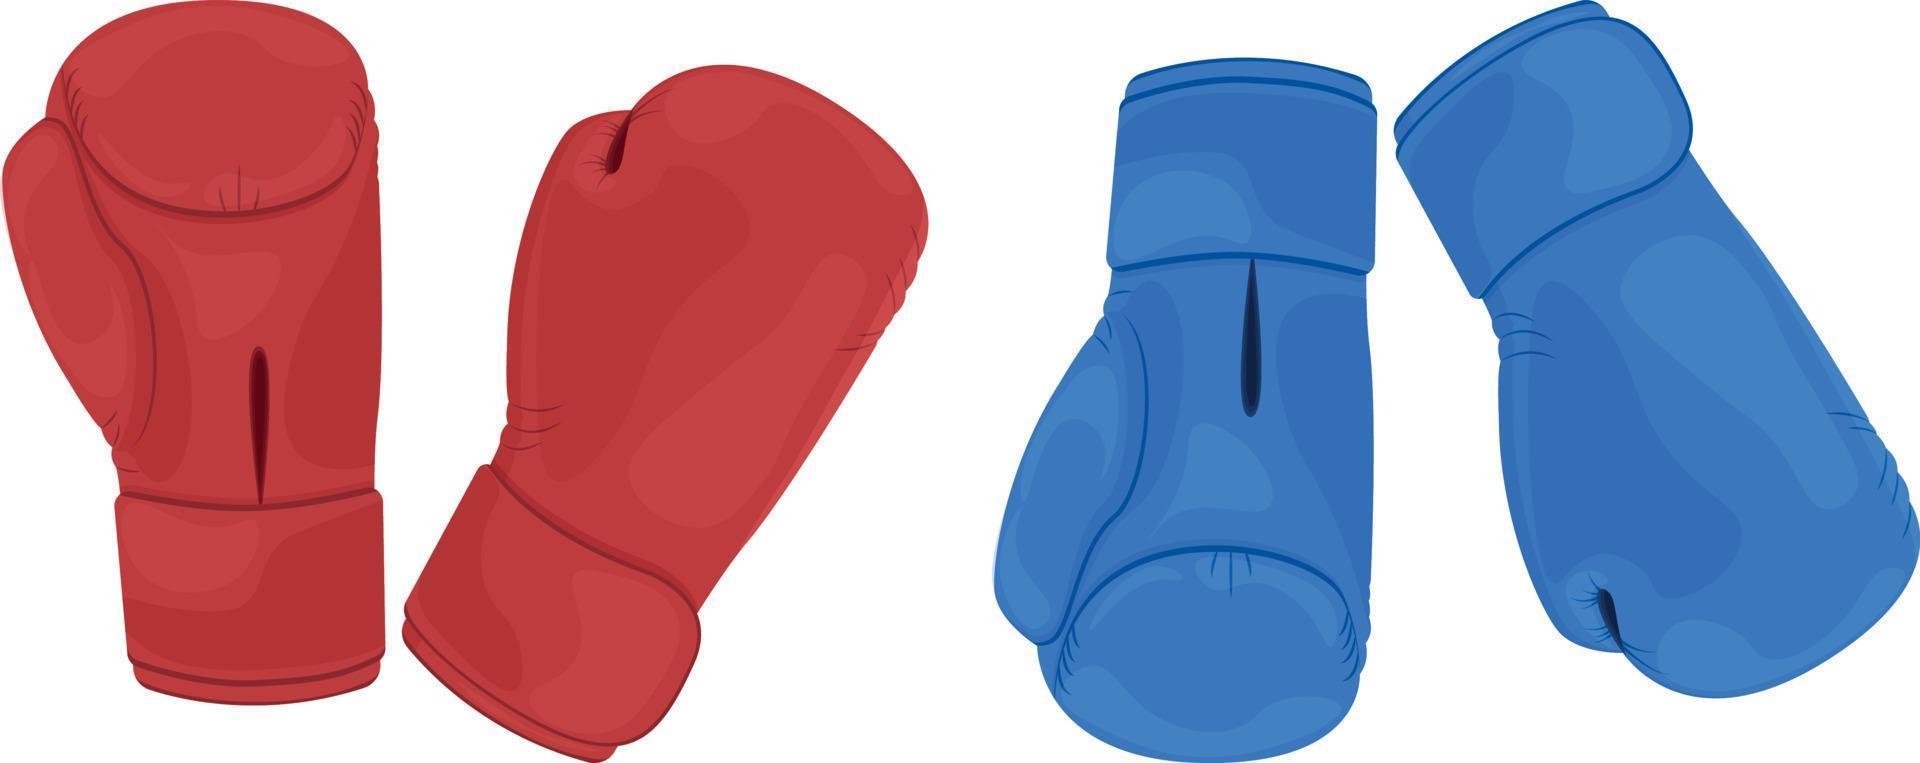 en sporter uppsättning bestående av två par av röd och blå boxning handskar. boxning handskar till skydda din händer från slag. sporter Utrustning för boxning, kickboxning och Övrig krigisk konst. vektor illustration